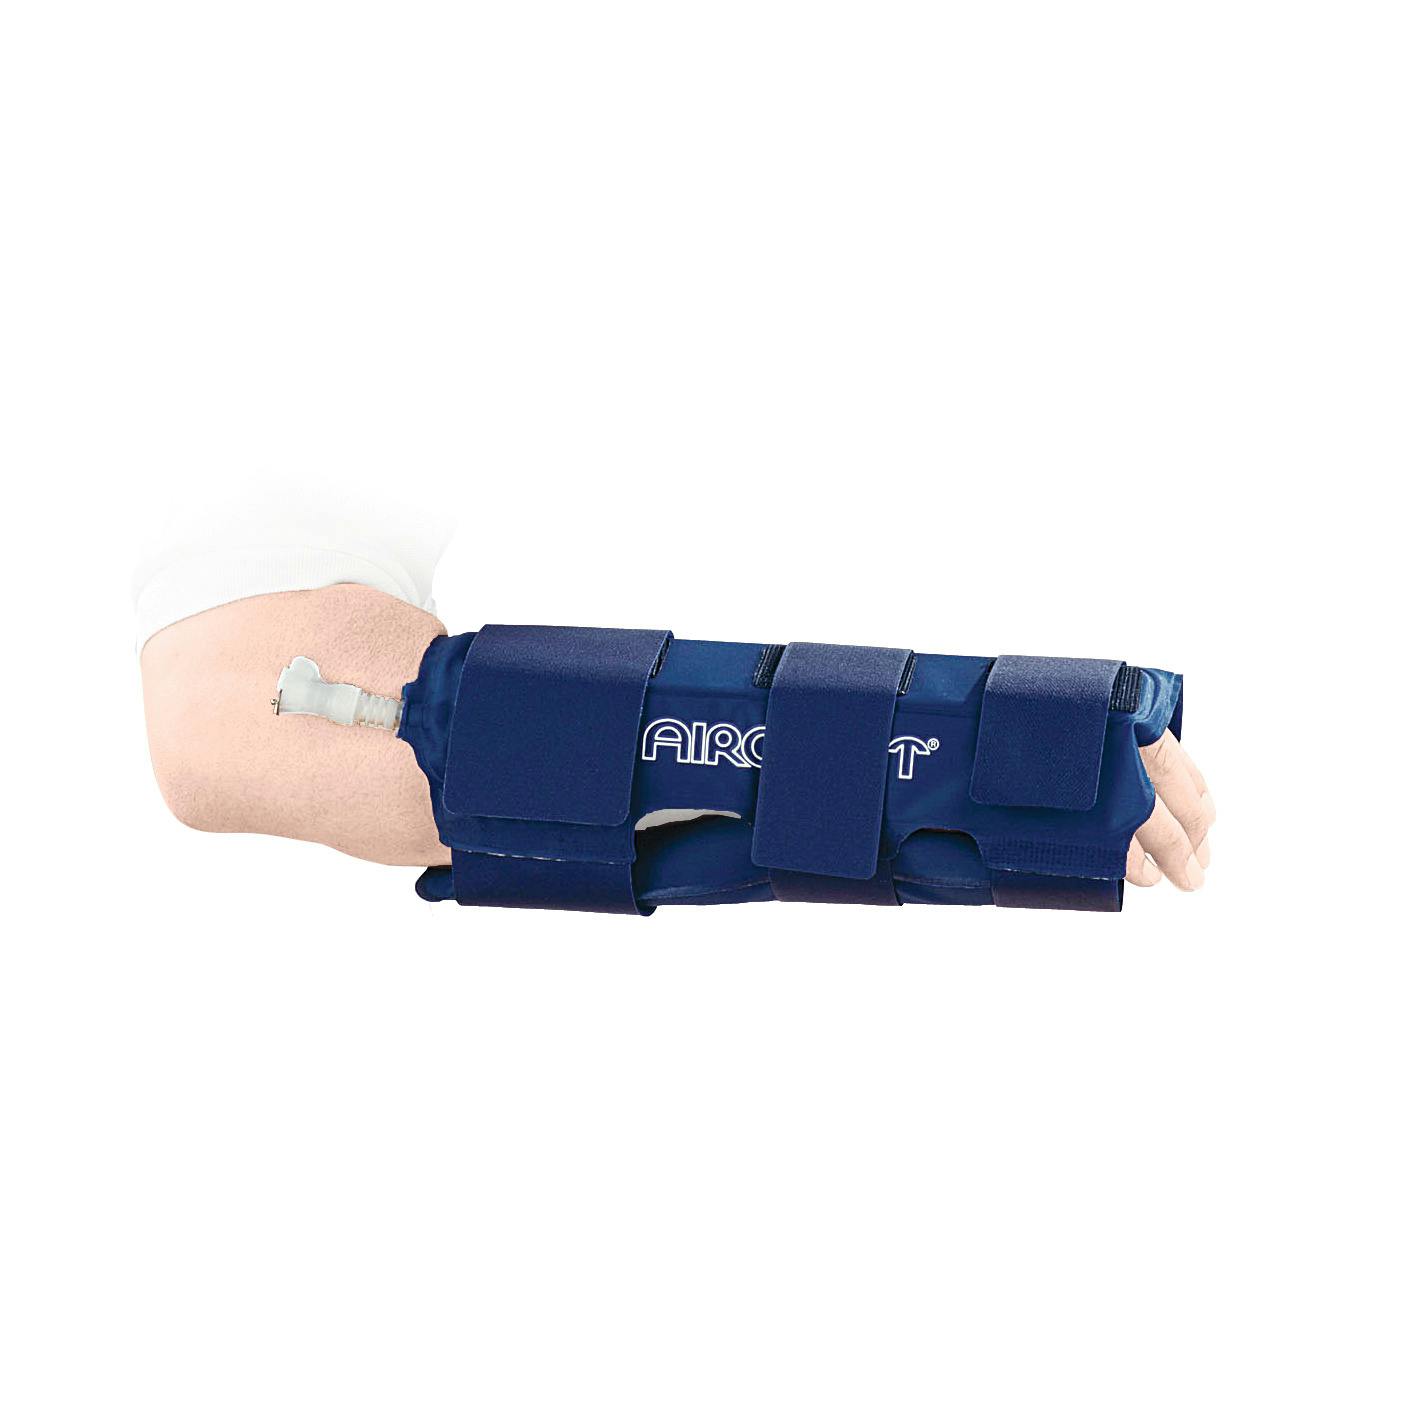 Produktbild AIRCAST® Cryo/Cuff™-Unterarmbandage, Kältetherapie-System zur effektiven Reduzierung von Schwellungen und Schmerzen